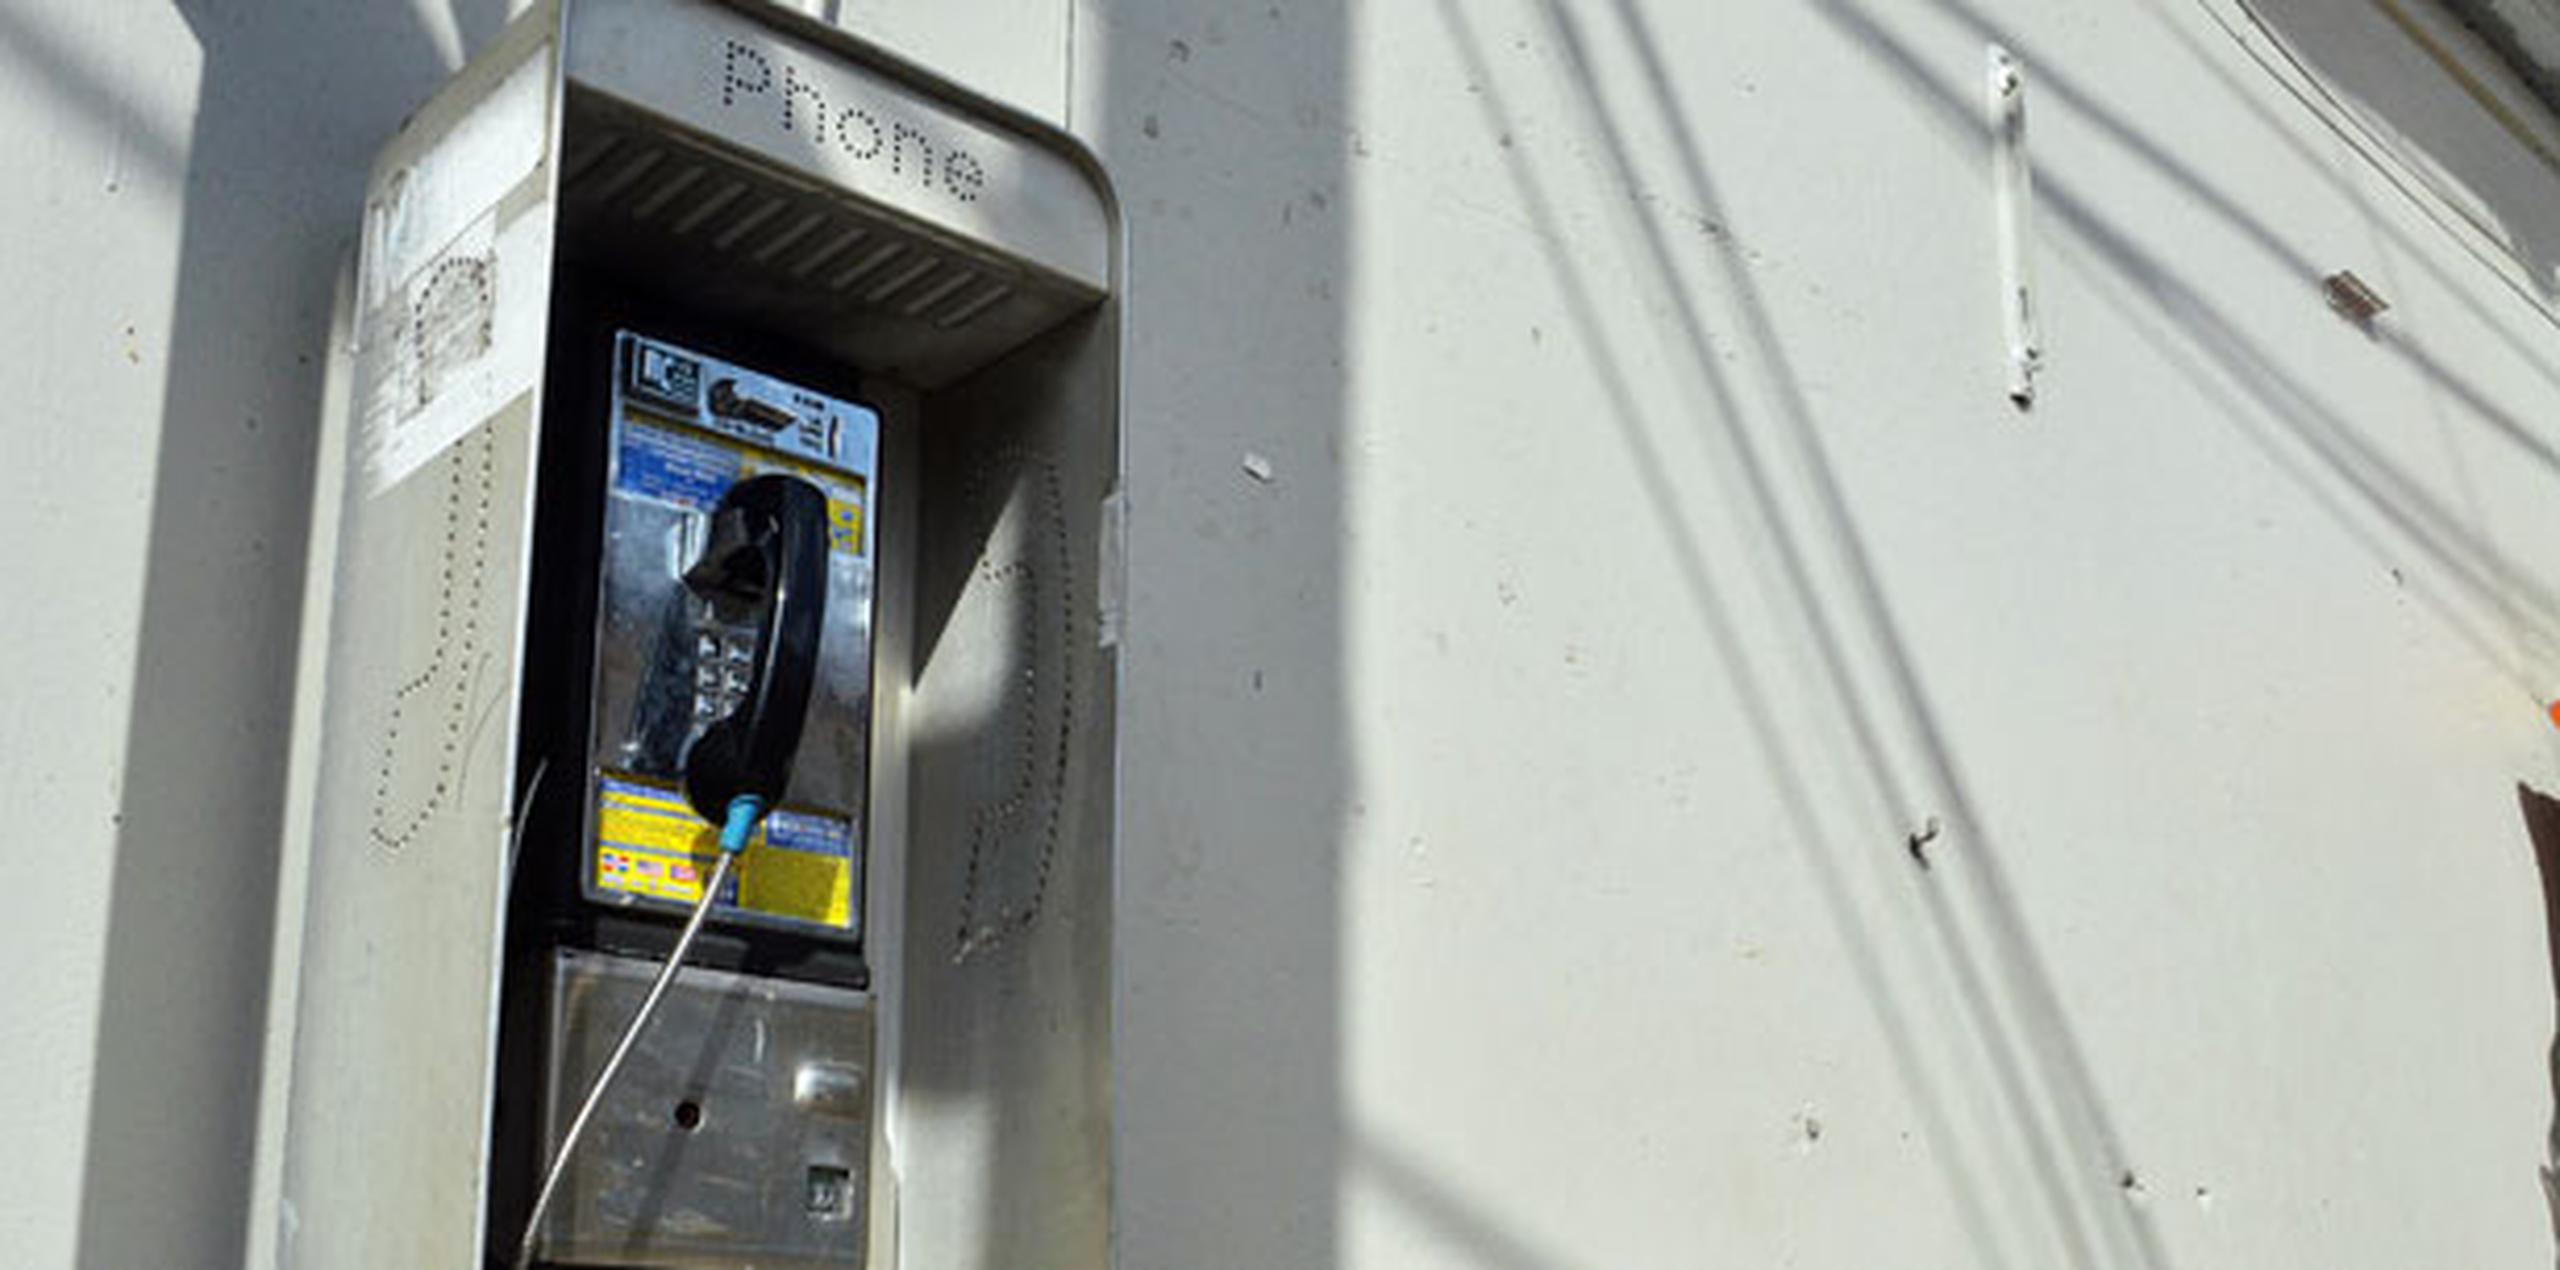 Los dispositivos reemplazarían unos 8,400 teléfonos públicos en 6,452 puntos de la ciudad. (Archivo)